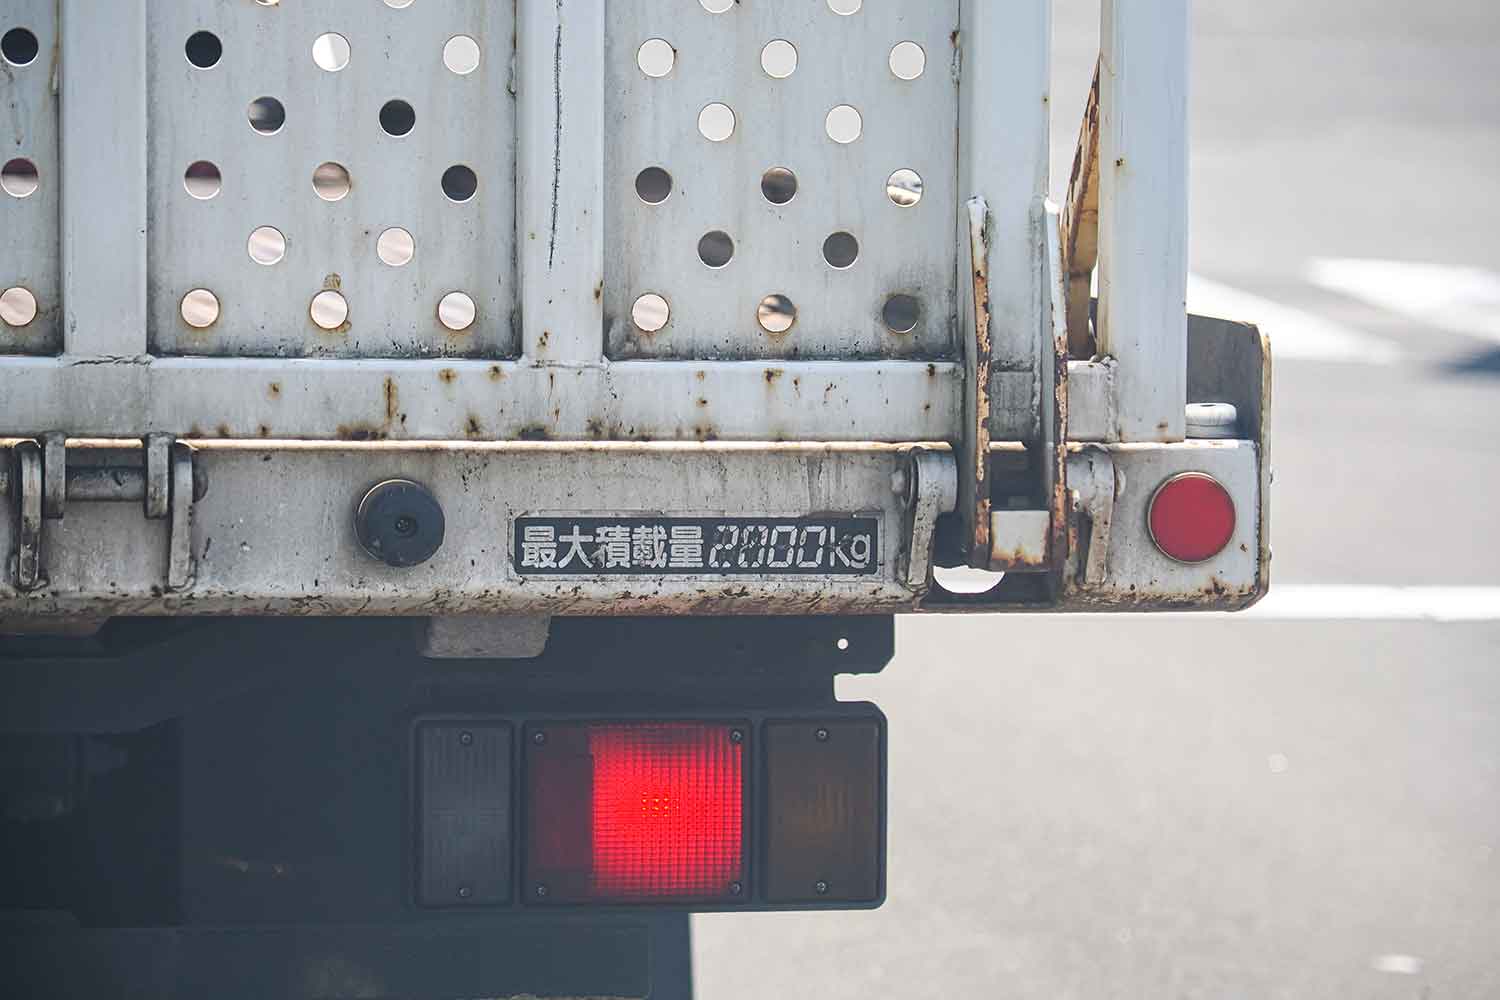 大型トラックに貼られた最大積載量の表示